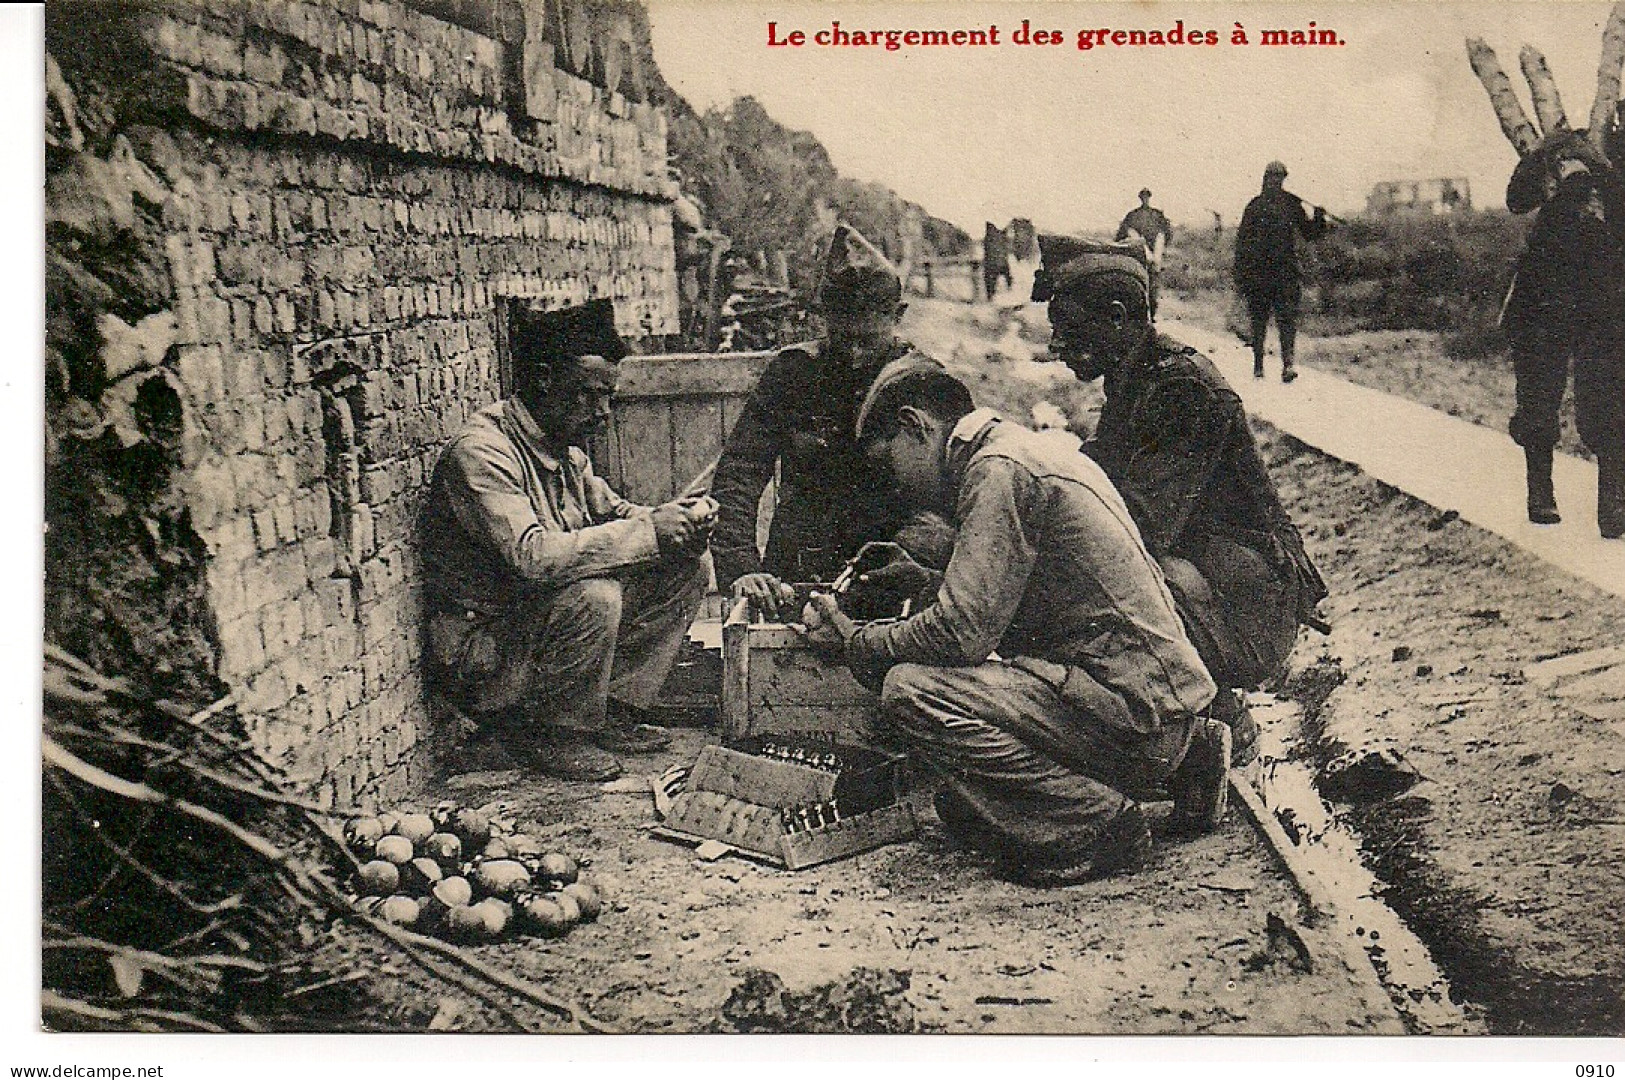 BELGISCH LEGER-L'ARMEE BELGE"LE CHARGEMENT DES GRENADES A MAIN-OPLADEN VAN DE HANDGRANATEN" - War 1914-18